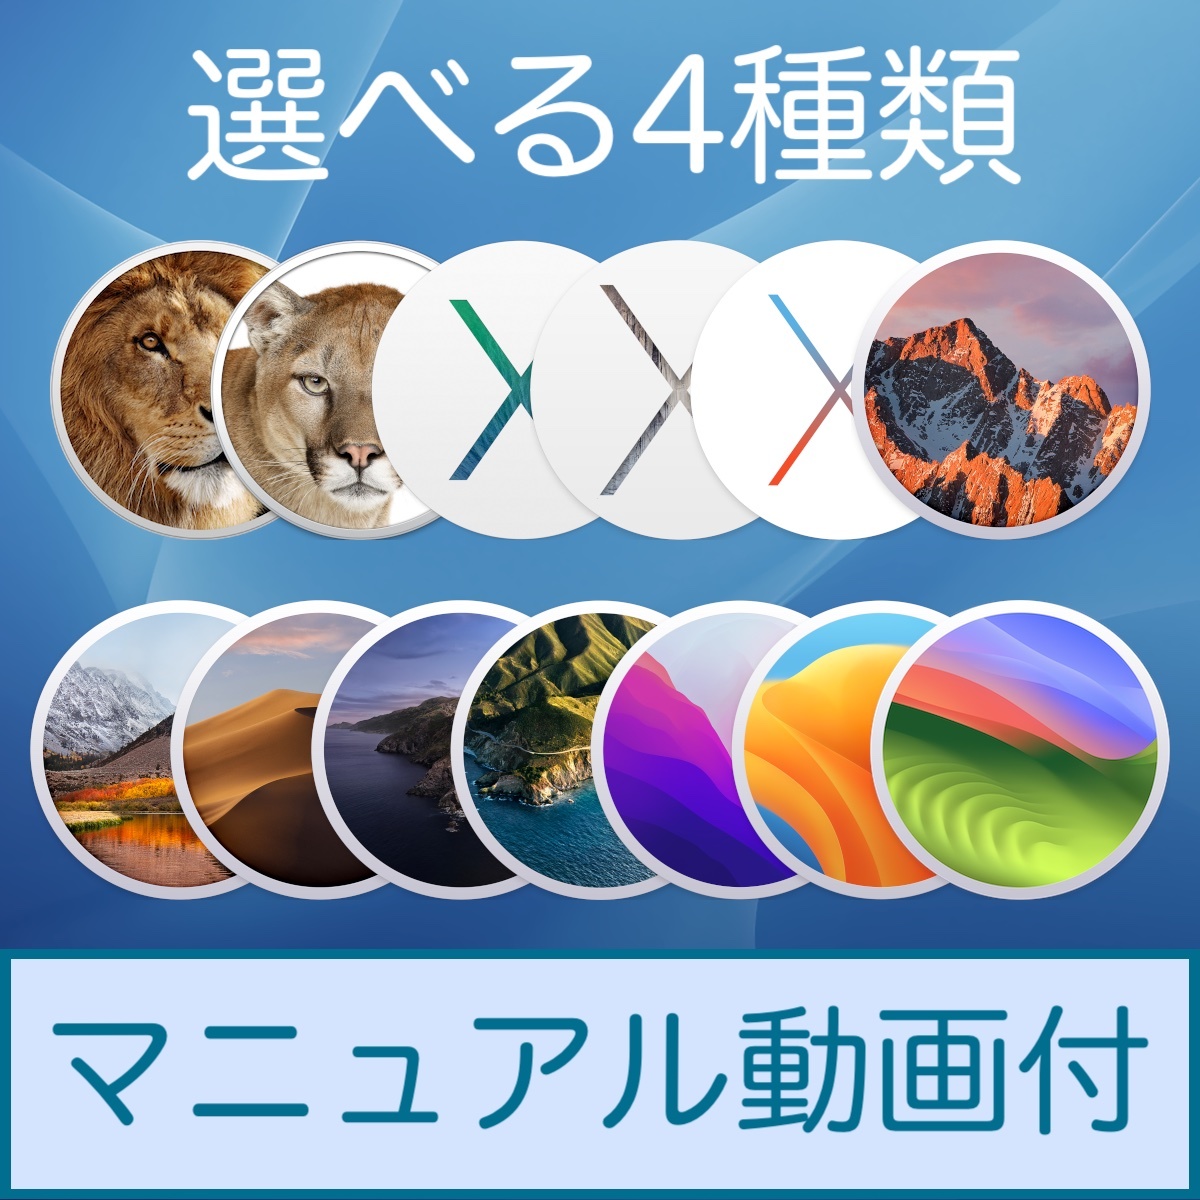 Mac OS 選べる4種類【 Lion 10.7.5 〜 Sonoma 14.0 】ダウンロード納品 / マニュアル動画ありの画像1